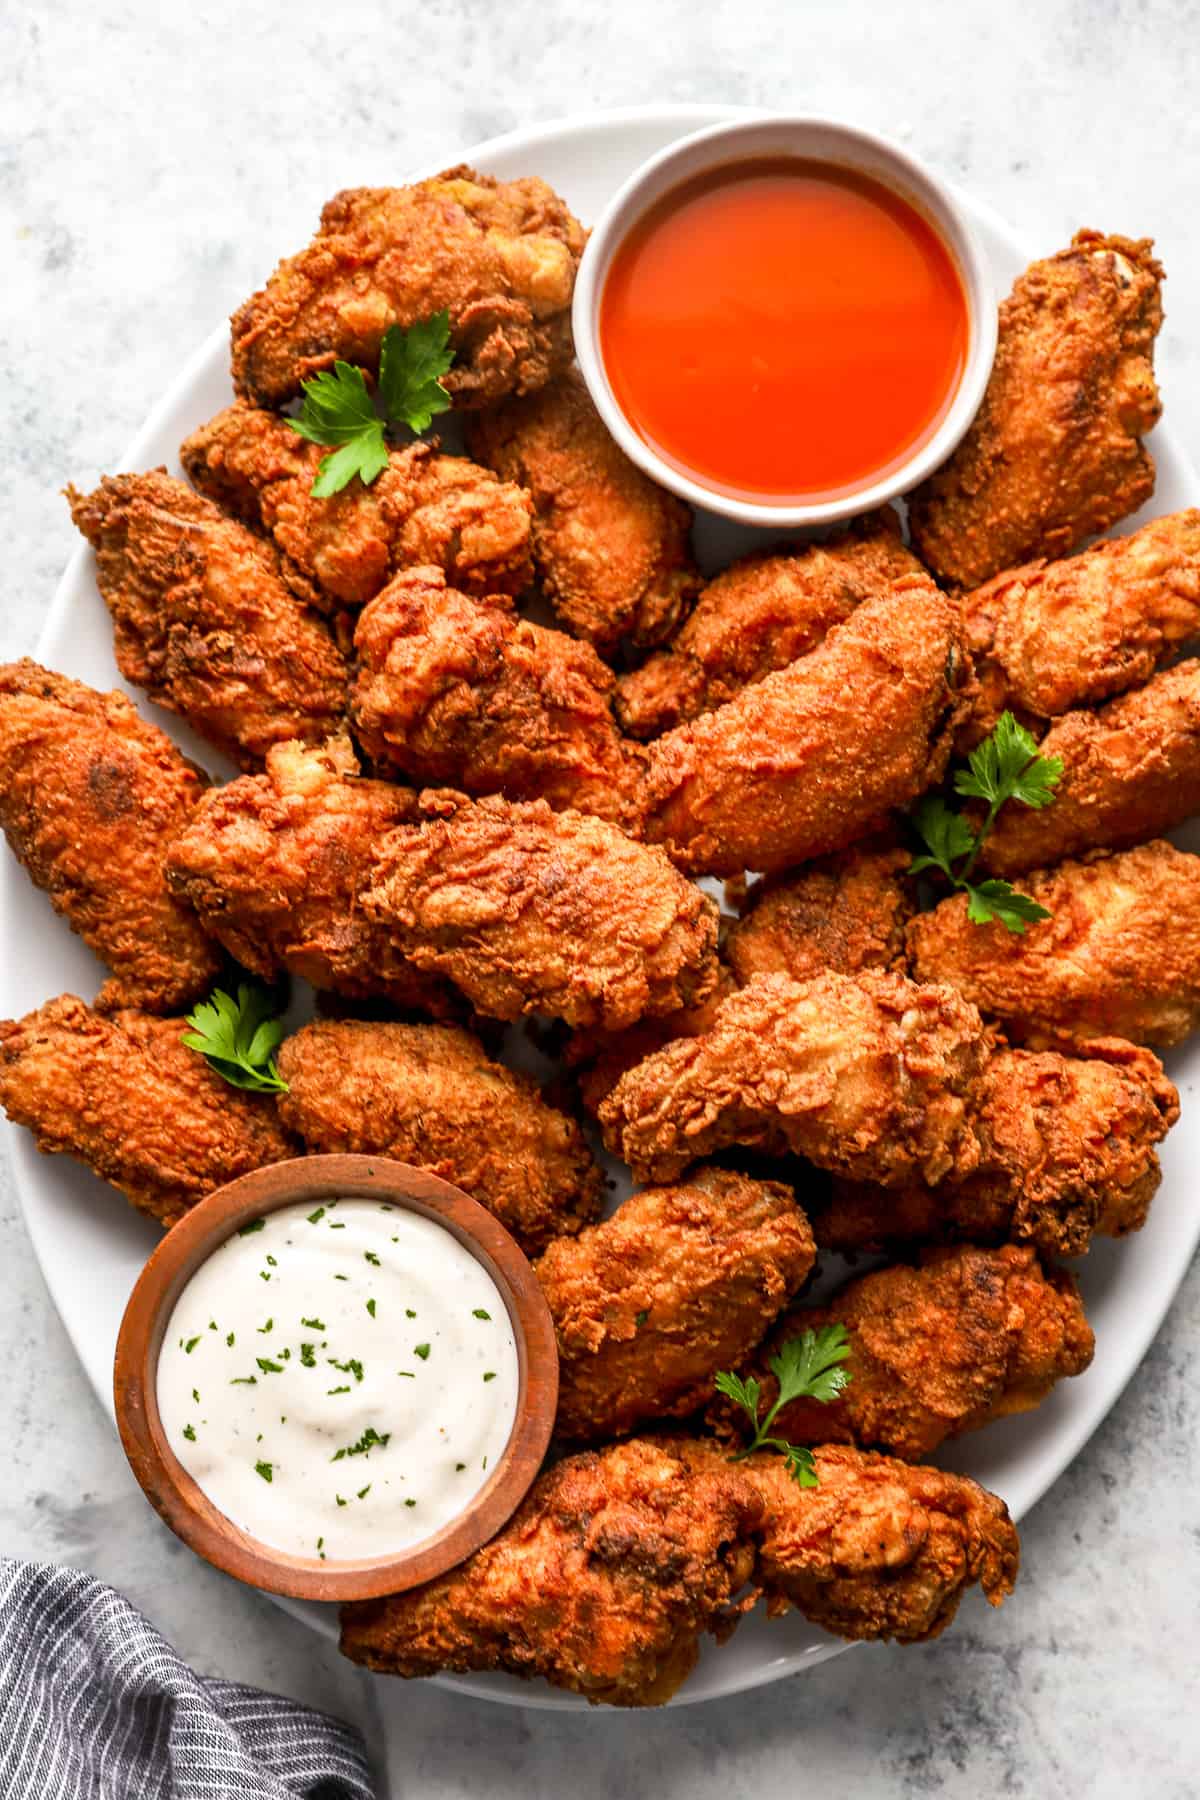 https://www.thecookierookie.com/wp-content/uploads/2023/02/fried-chicken-wings-recipe.jpg